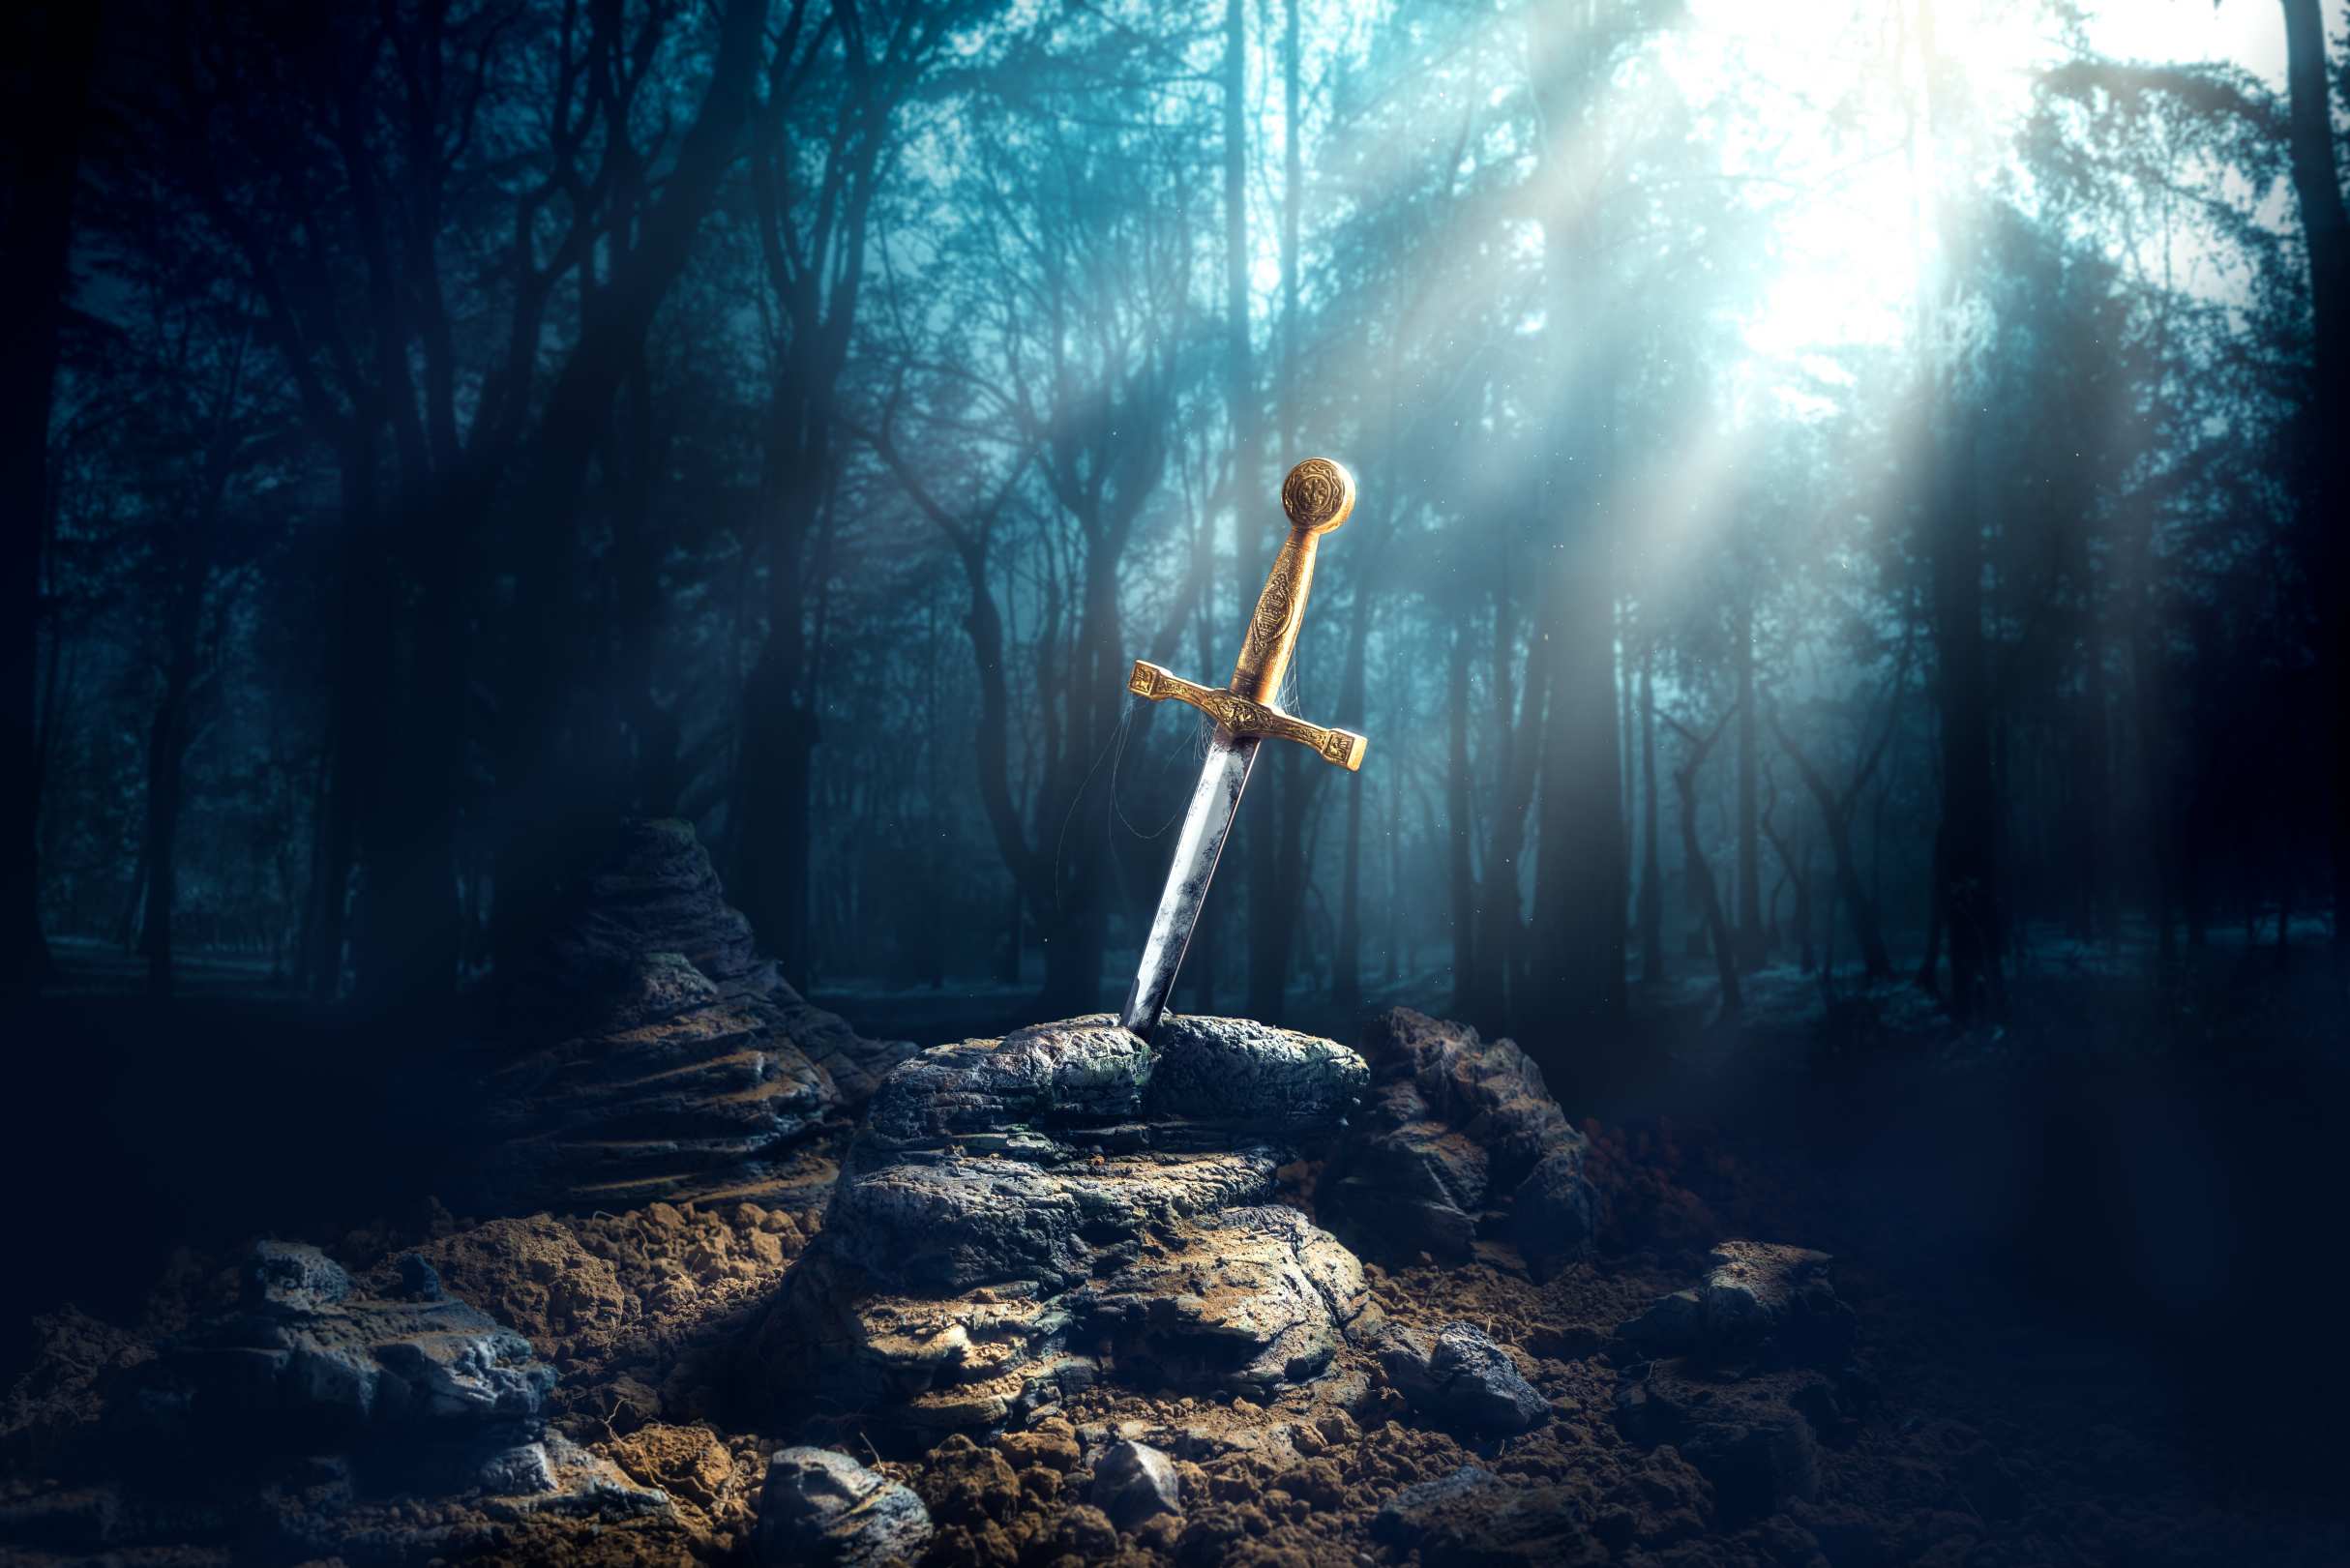 Excalibur, thanh kiếm trong đá với các tia sáng và bụi trong một khu rừng tối